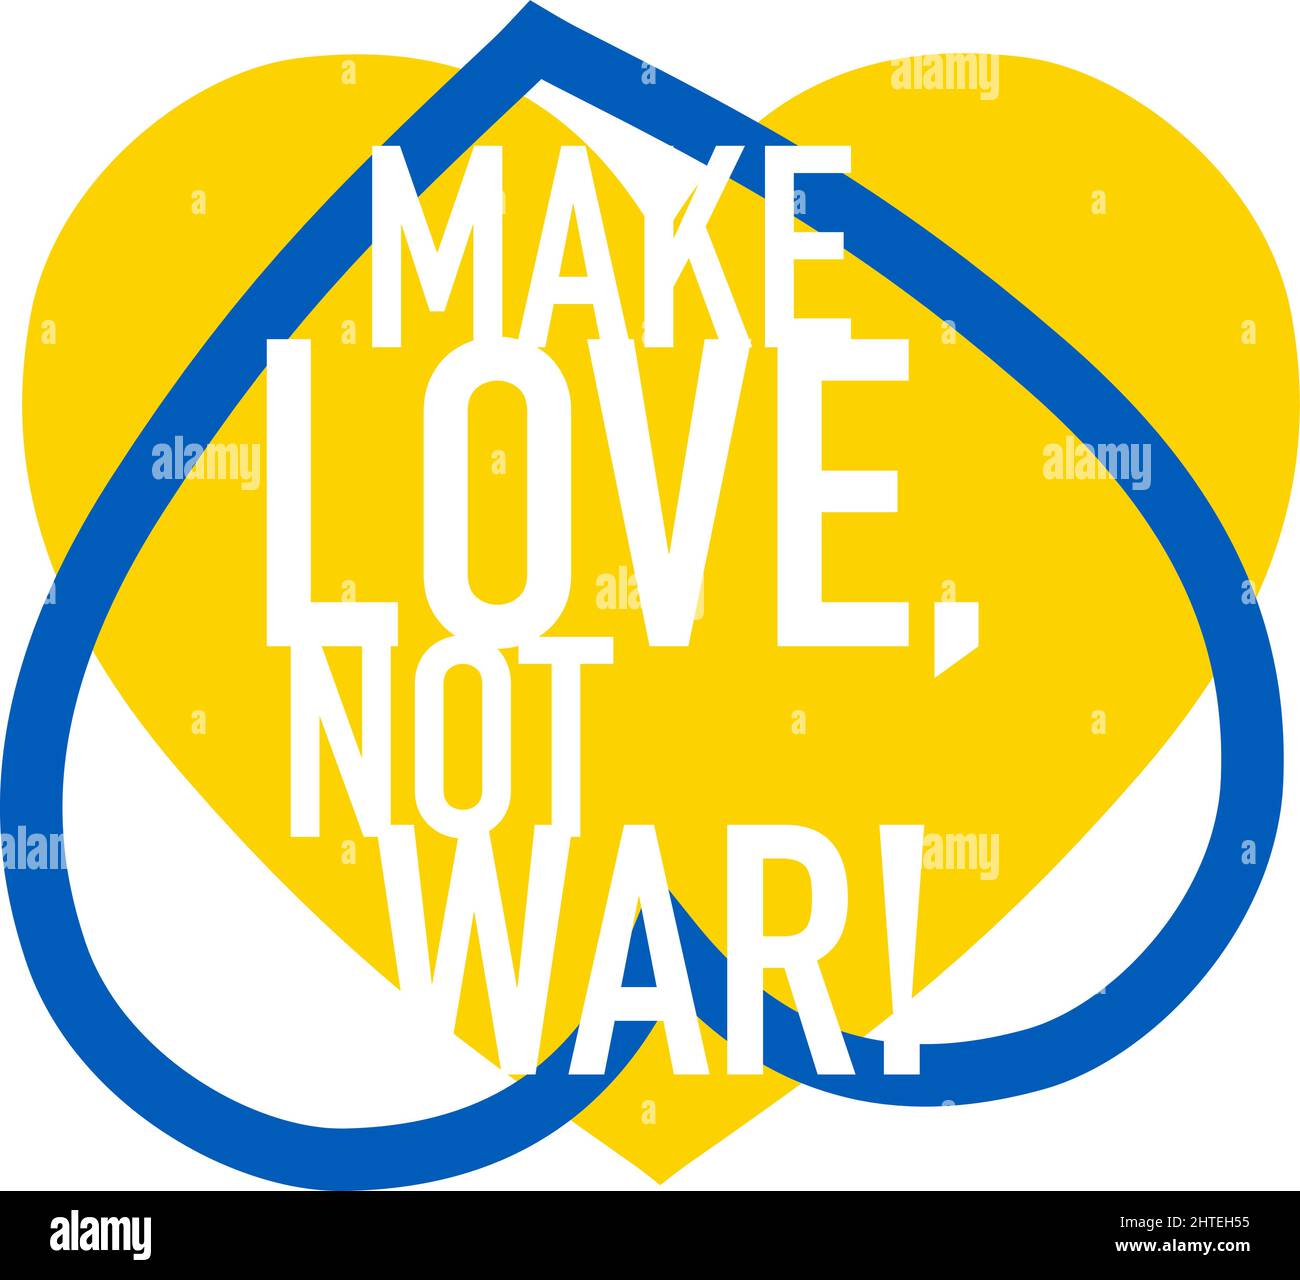 Haz que Love Not War Lettering en dos iconos de corazones. Icono de soporte para personas en Kiev y Ucrania. Manténgase fuerte juntos. Símbolo patriótico, icono.-Suplemento Ilustración del Vector